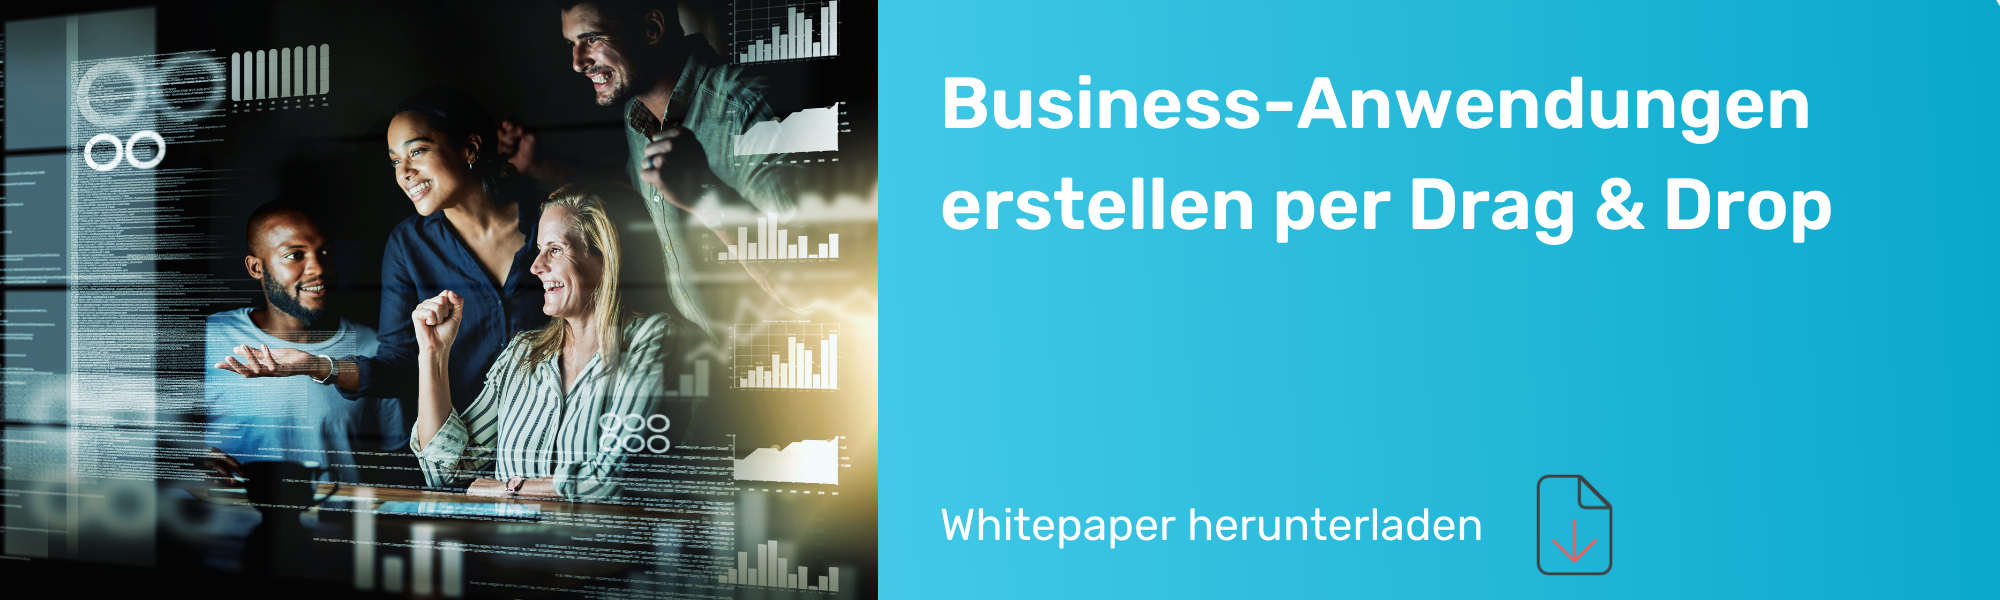 LP_header_whitepaper_business-anwendungen